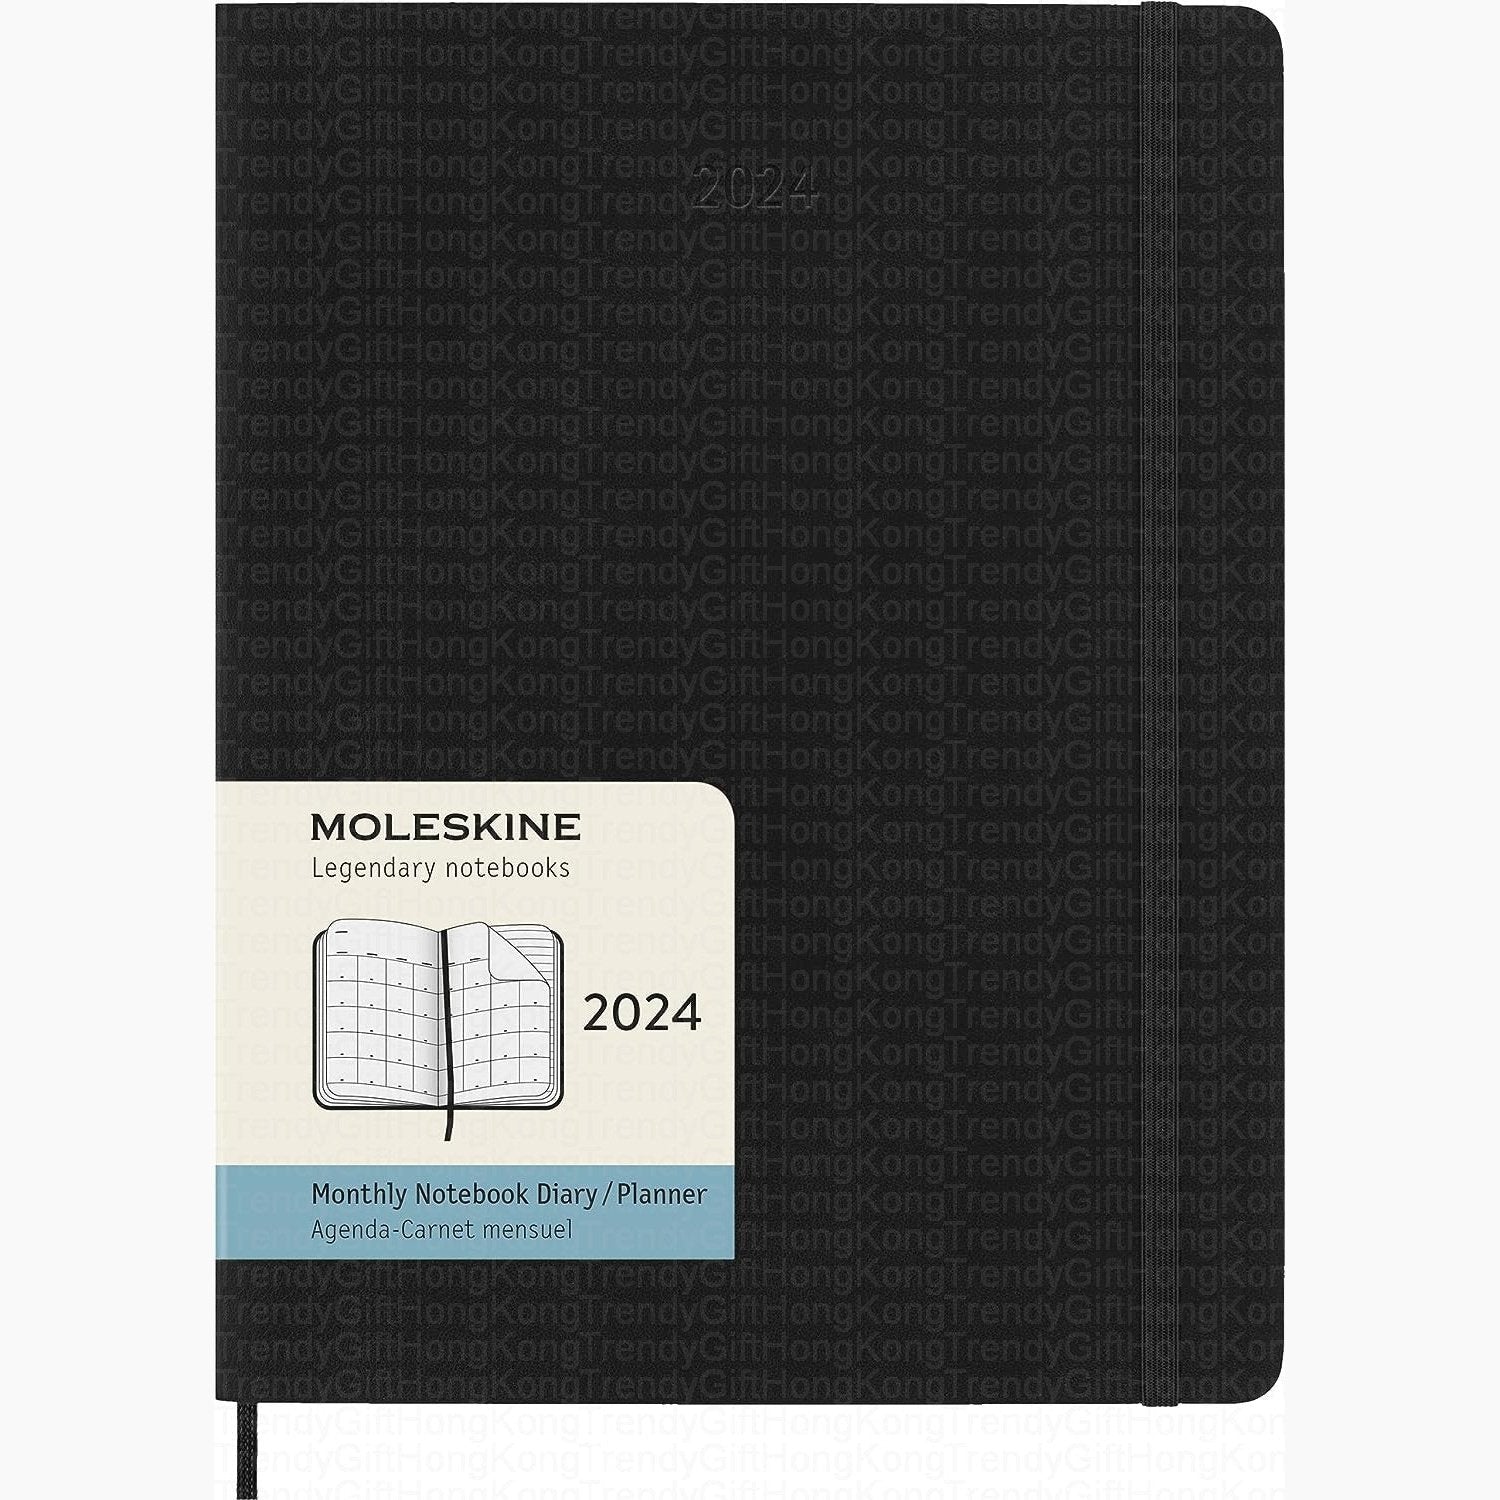 Moleskine 2024 12 Monthly Planner - Black Soft Cover trendygifthk